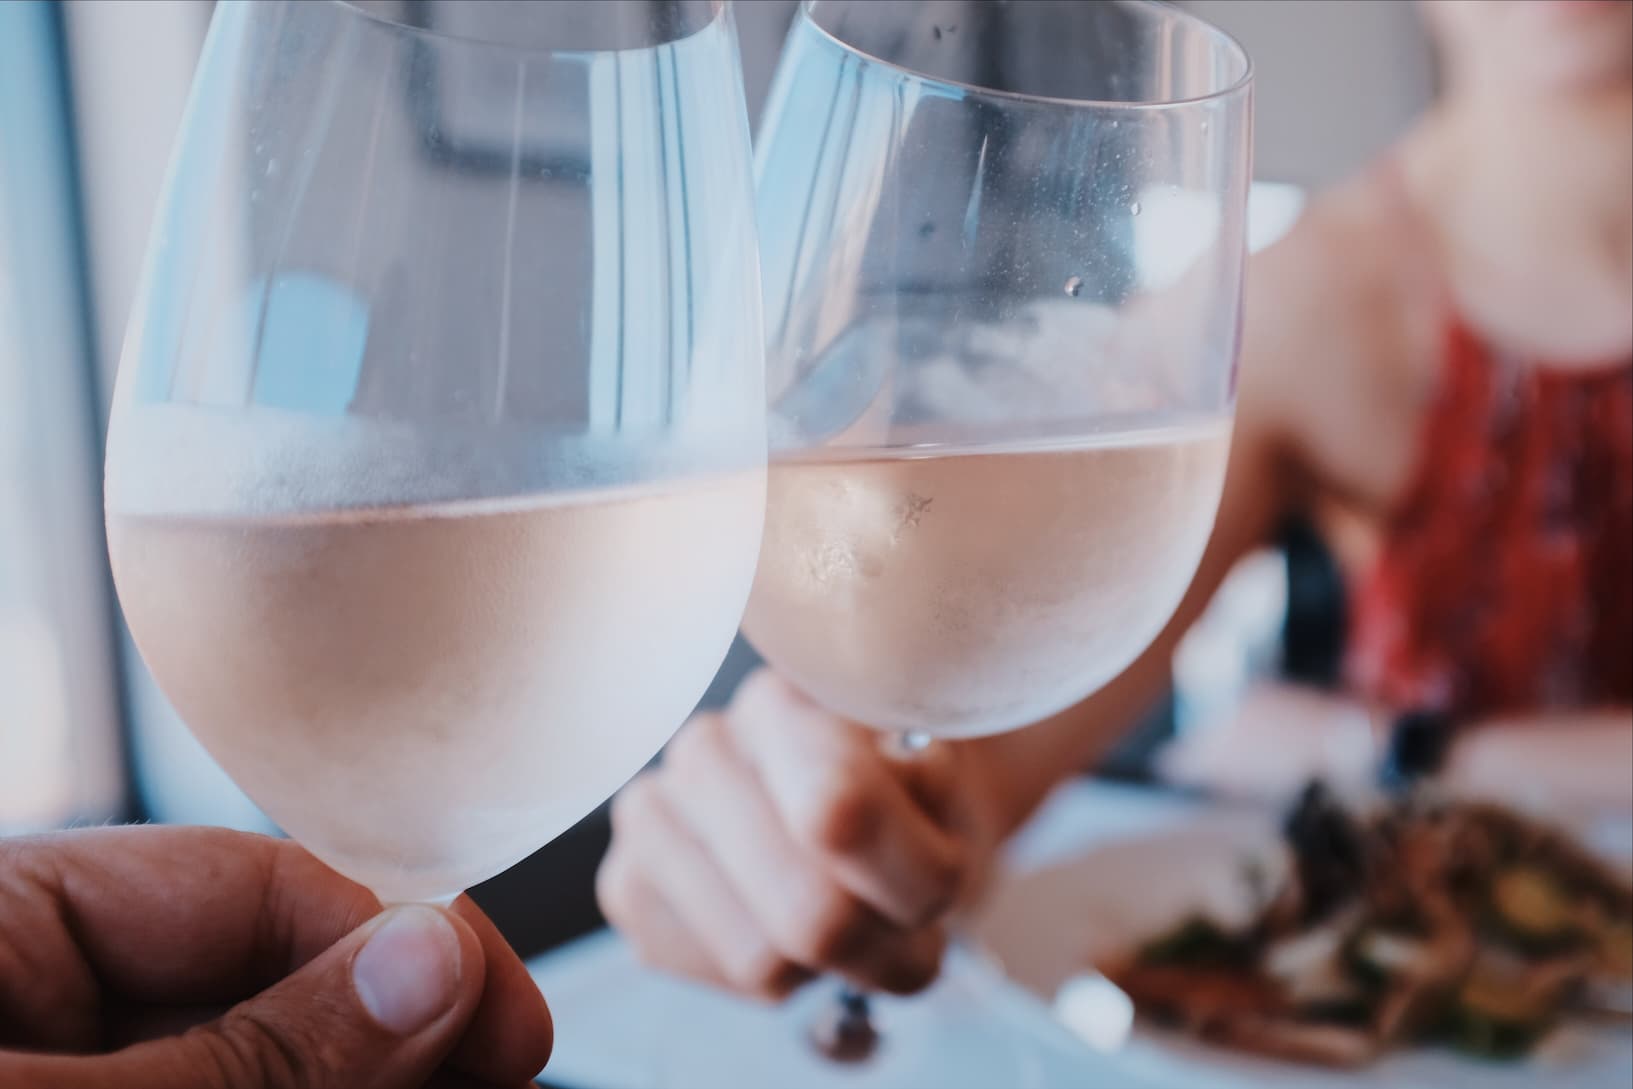 Um homem e uma mulher brindam com vinho rosé durante o almoço. Imagem disponível em unsplash.